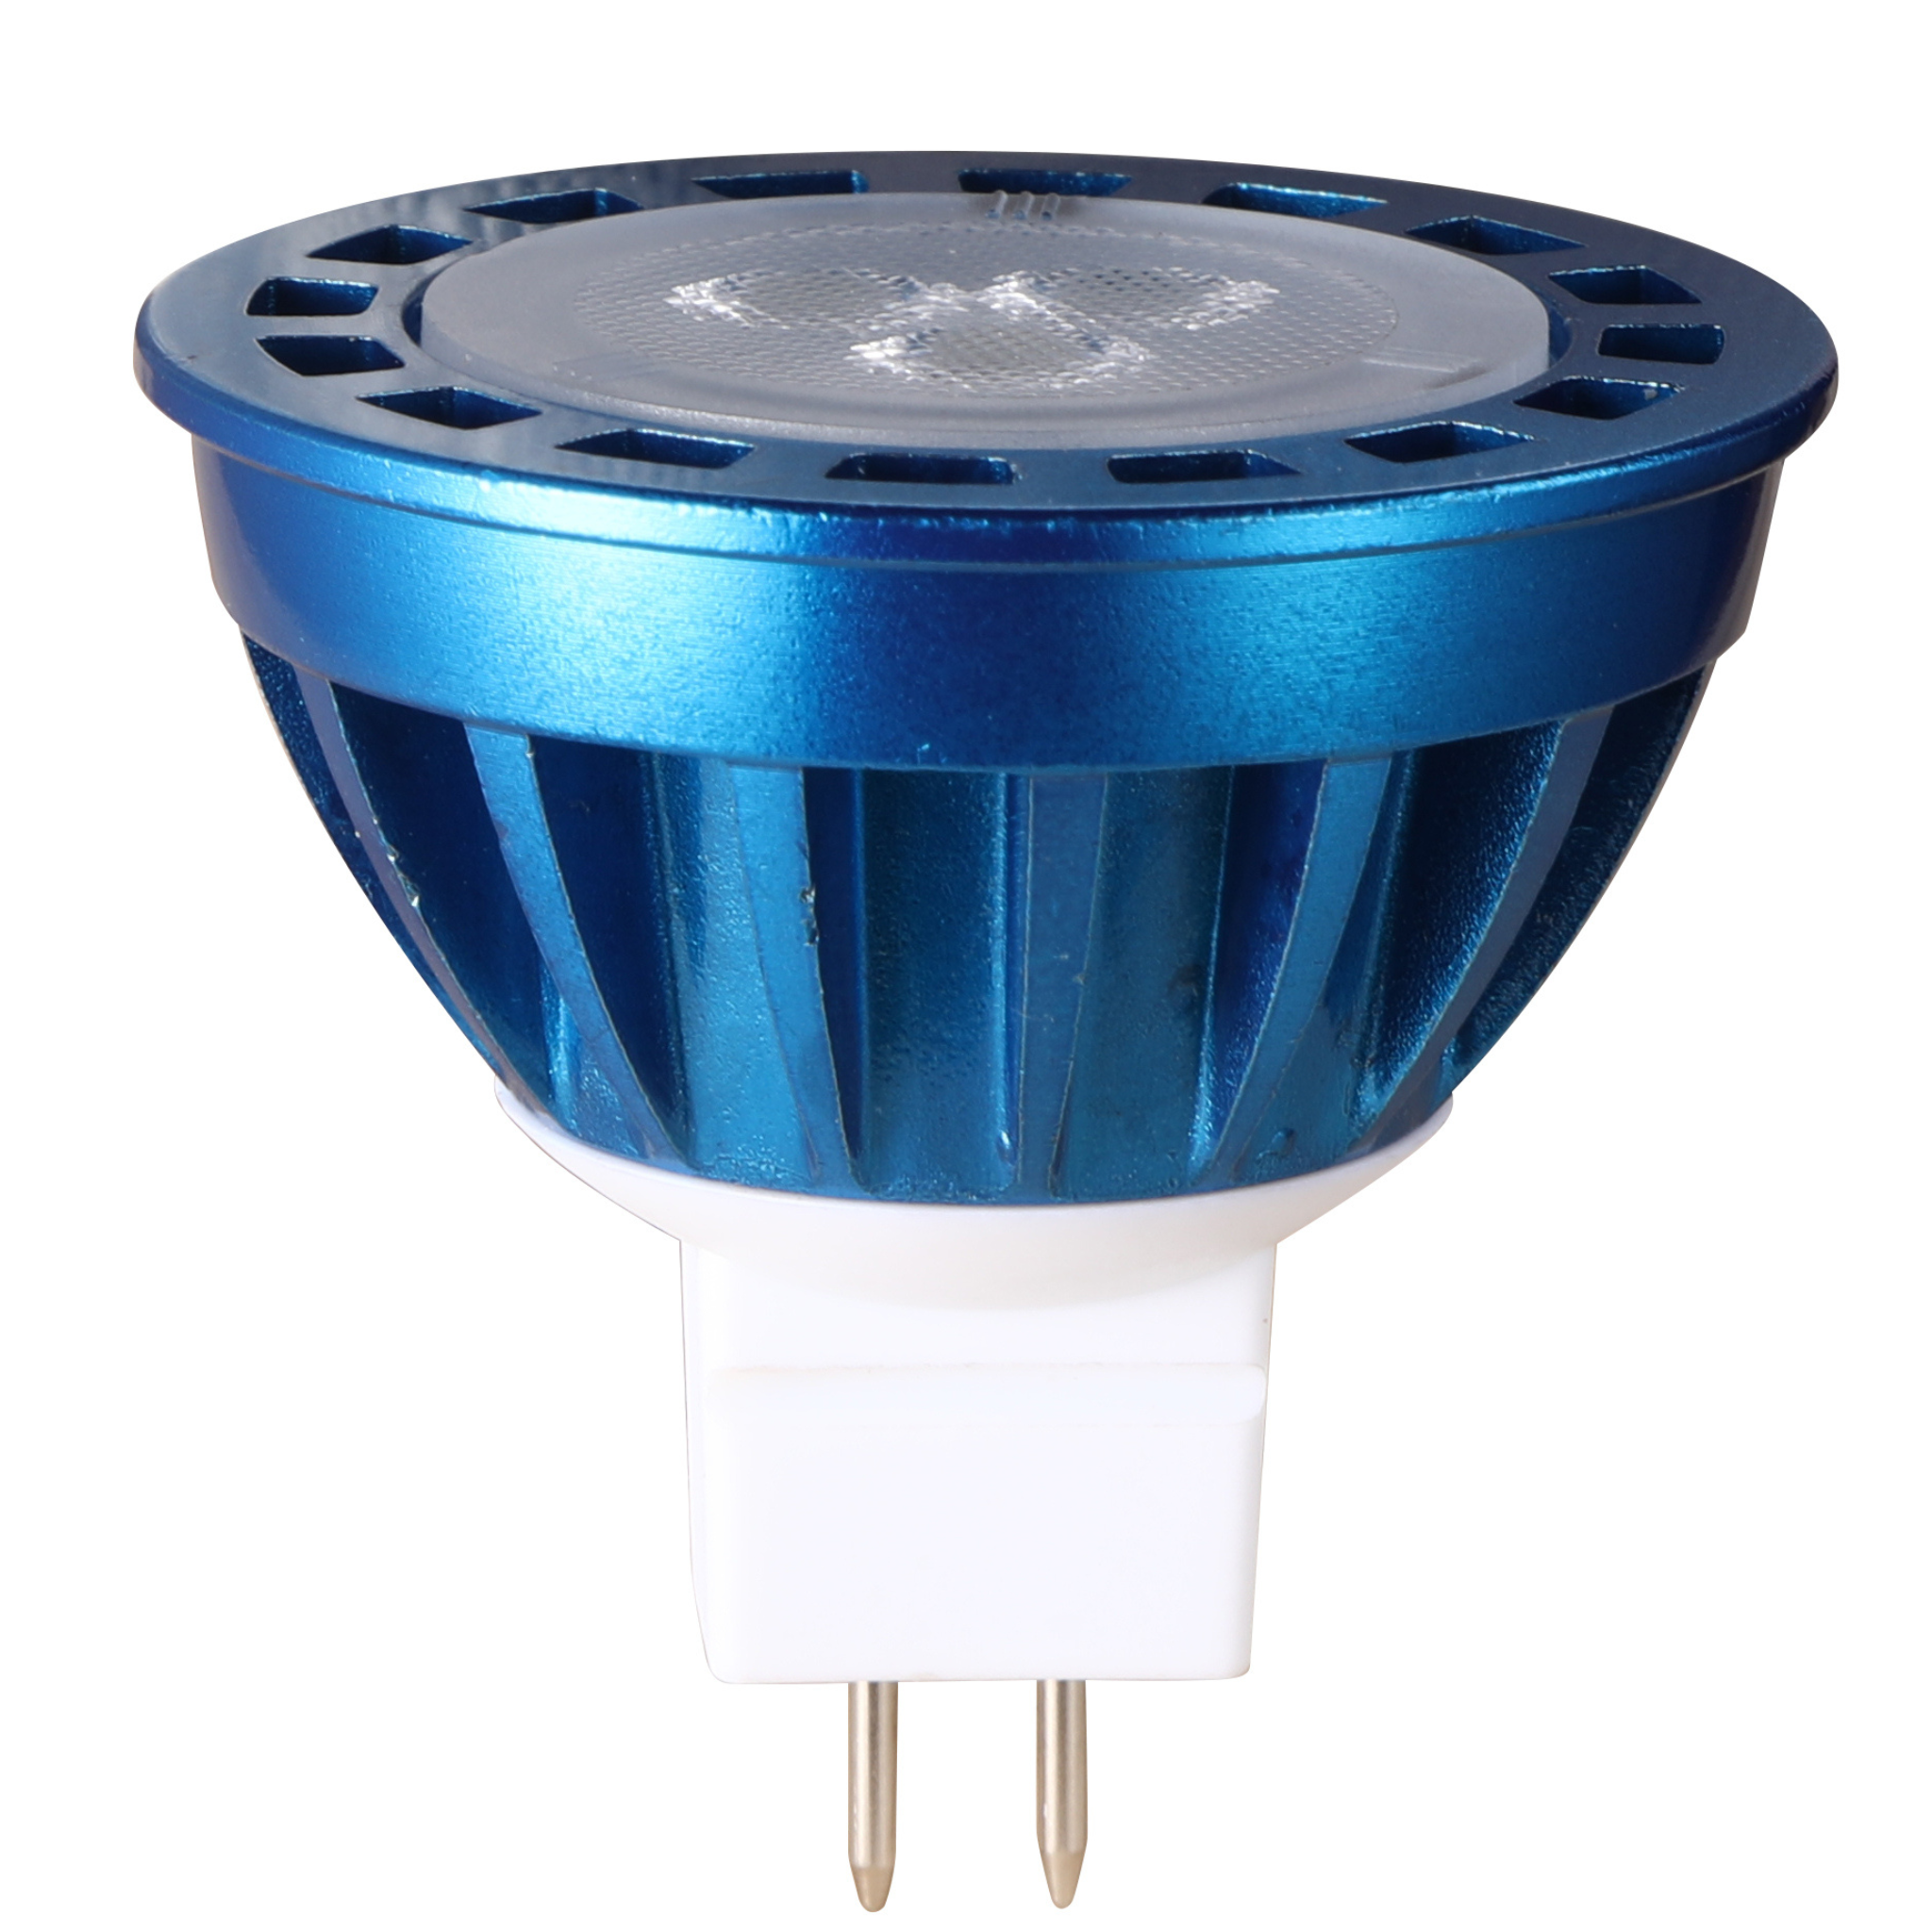 Moran Series LED Landscape Spot Light - Solid Brass - 5W 2700K LED MR16  Bulb Included - 12v DC Low Voltage Lights